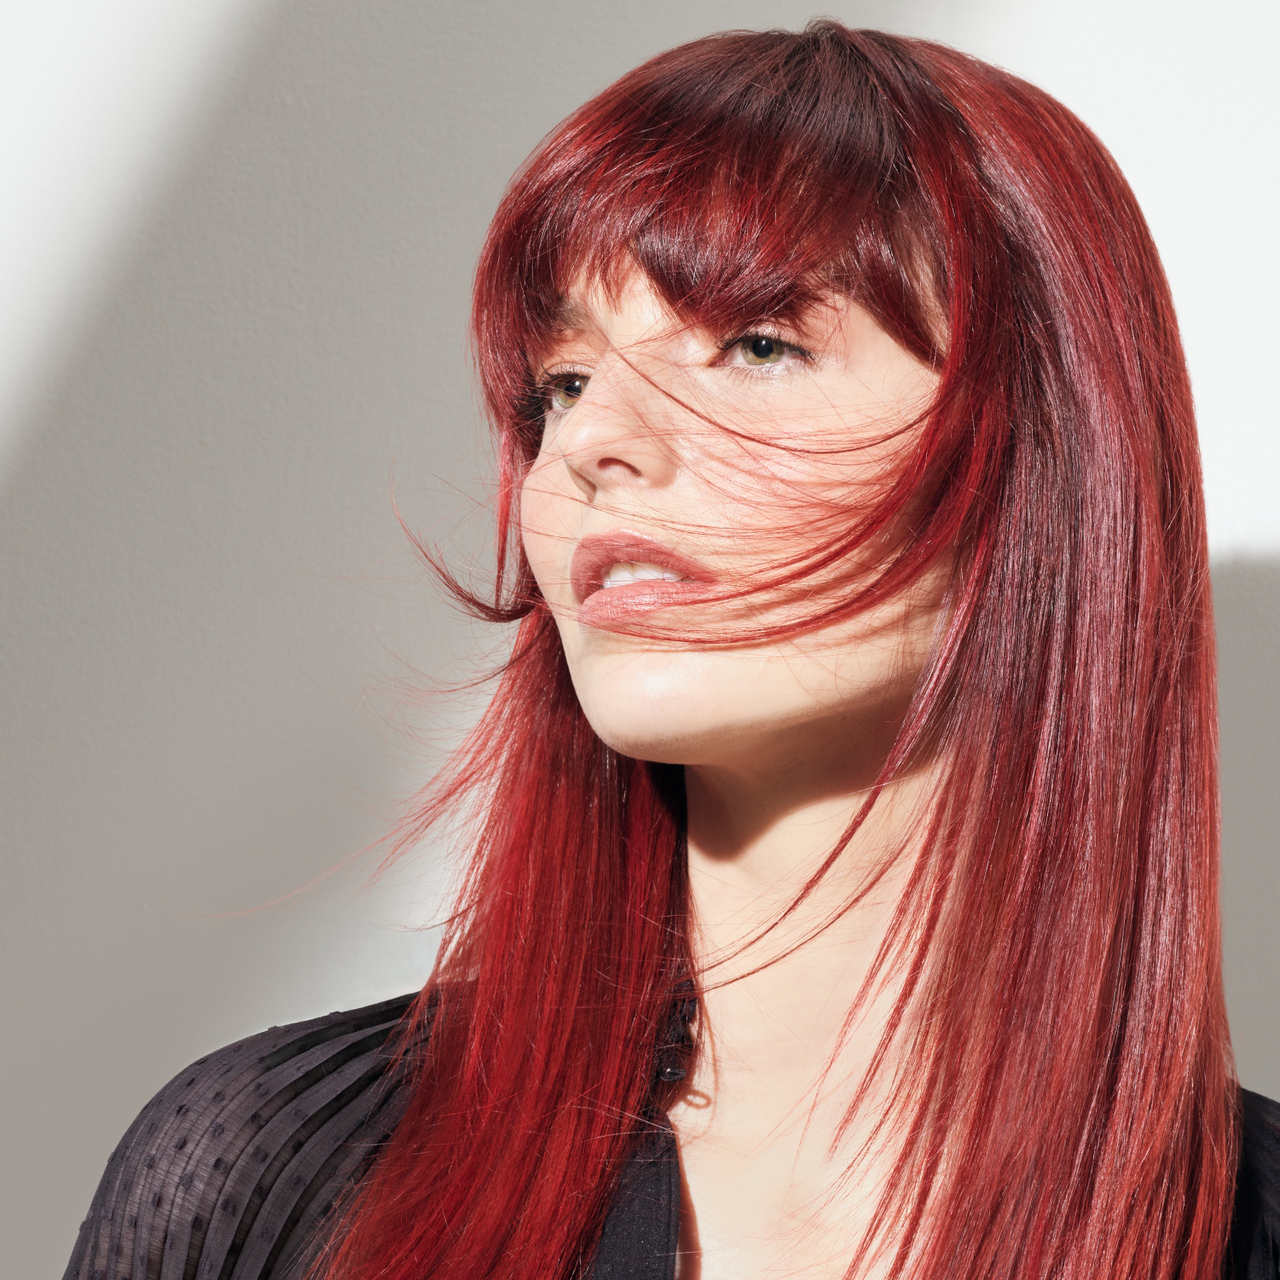 Portrait einer jungen Frau mit langen, glatten Haaren in einem leuchtenden Rot